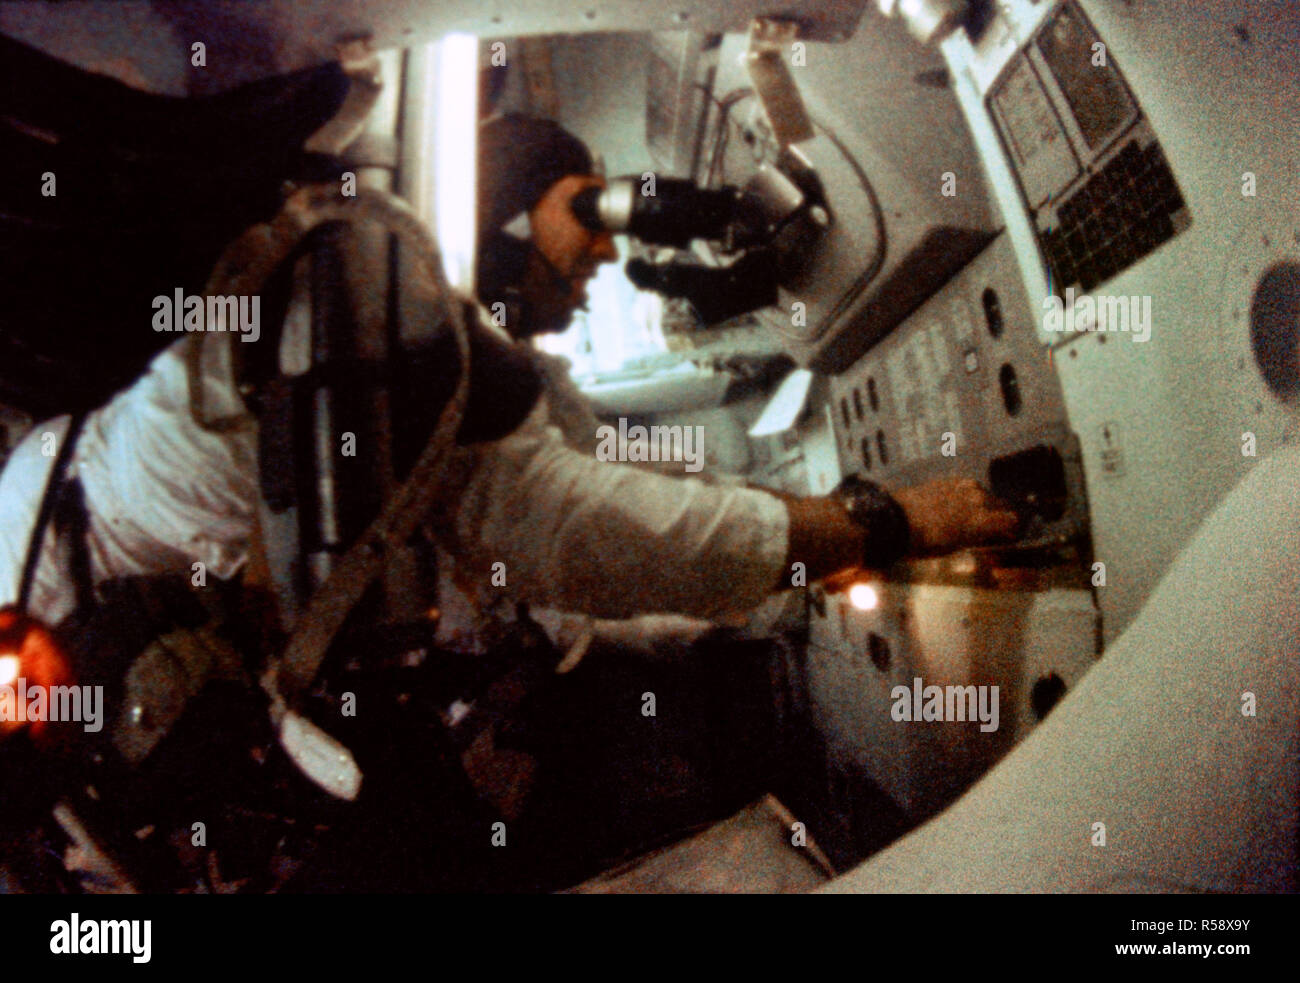 (21-27 Dez. 1968) - - - Astronaut James A. Lovell jr., Apollo 8 Befehl Modul Pilot, ist in der Führung der Apollo 8 Spacecraft Command Modul und Navigation Station während der Apollo 8 mission Lunar Orbit gesehen. Dieses Bild wurde von 16 mm Motion Picture Films. Stockfoto